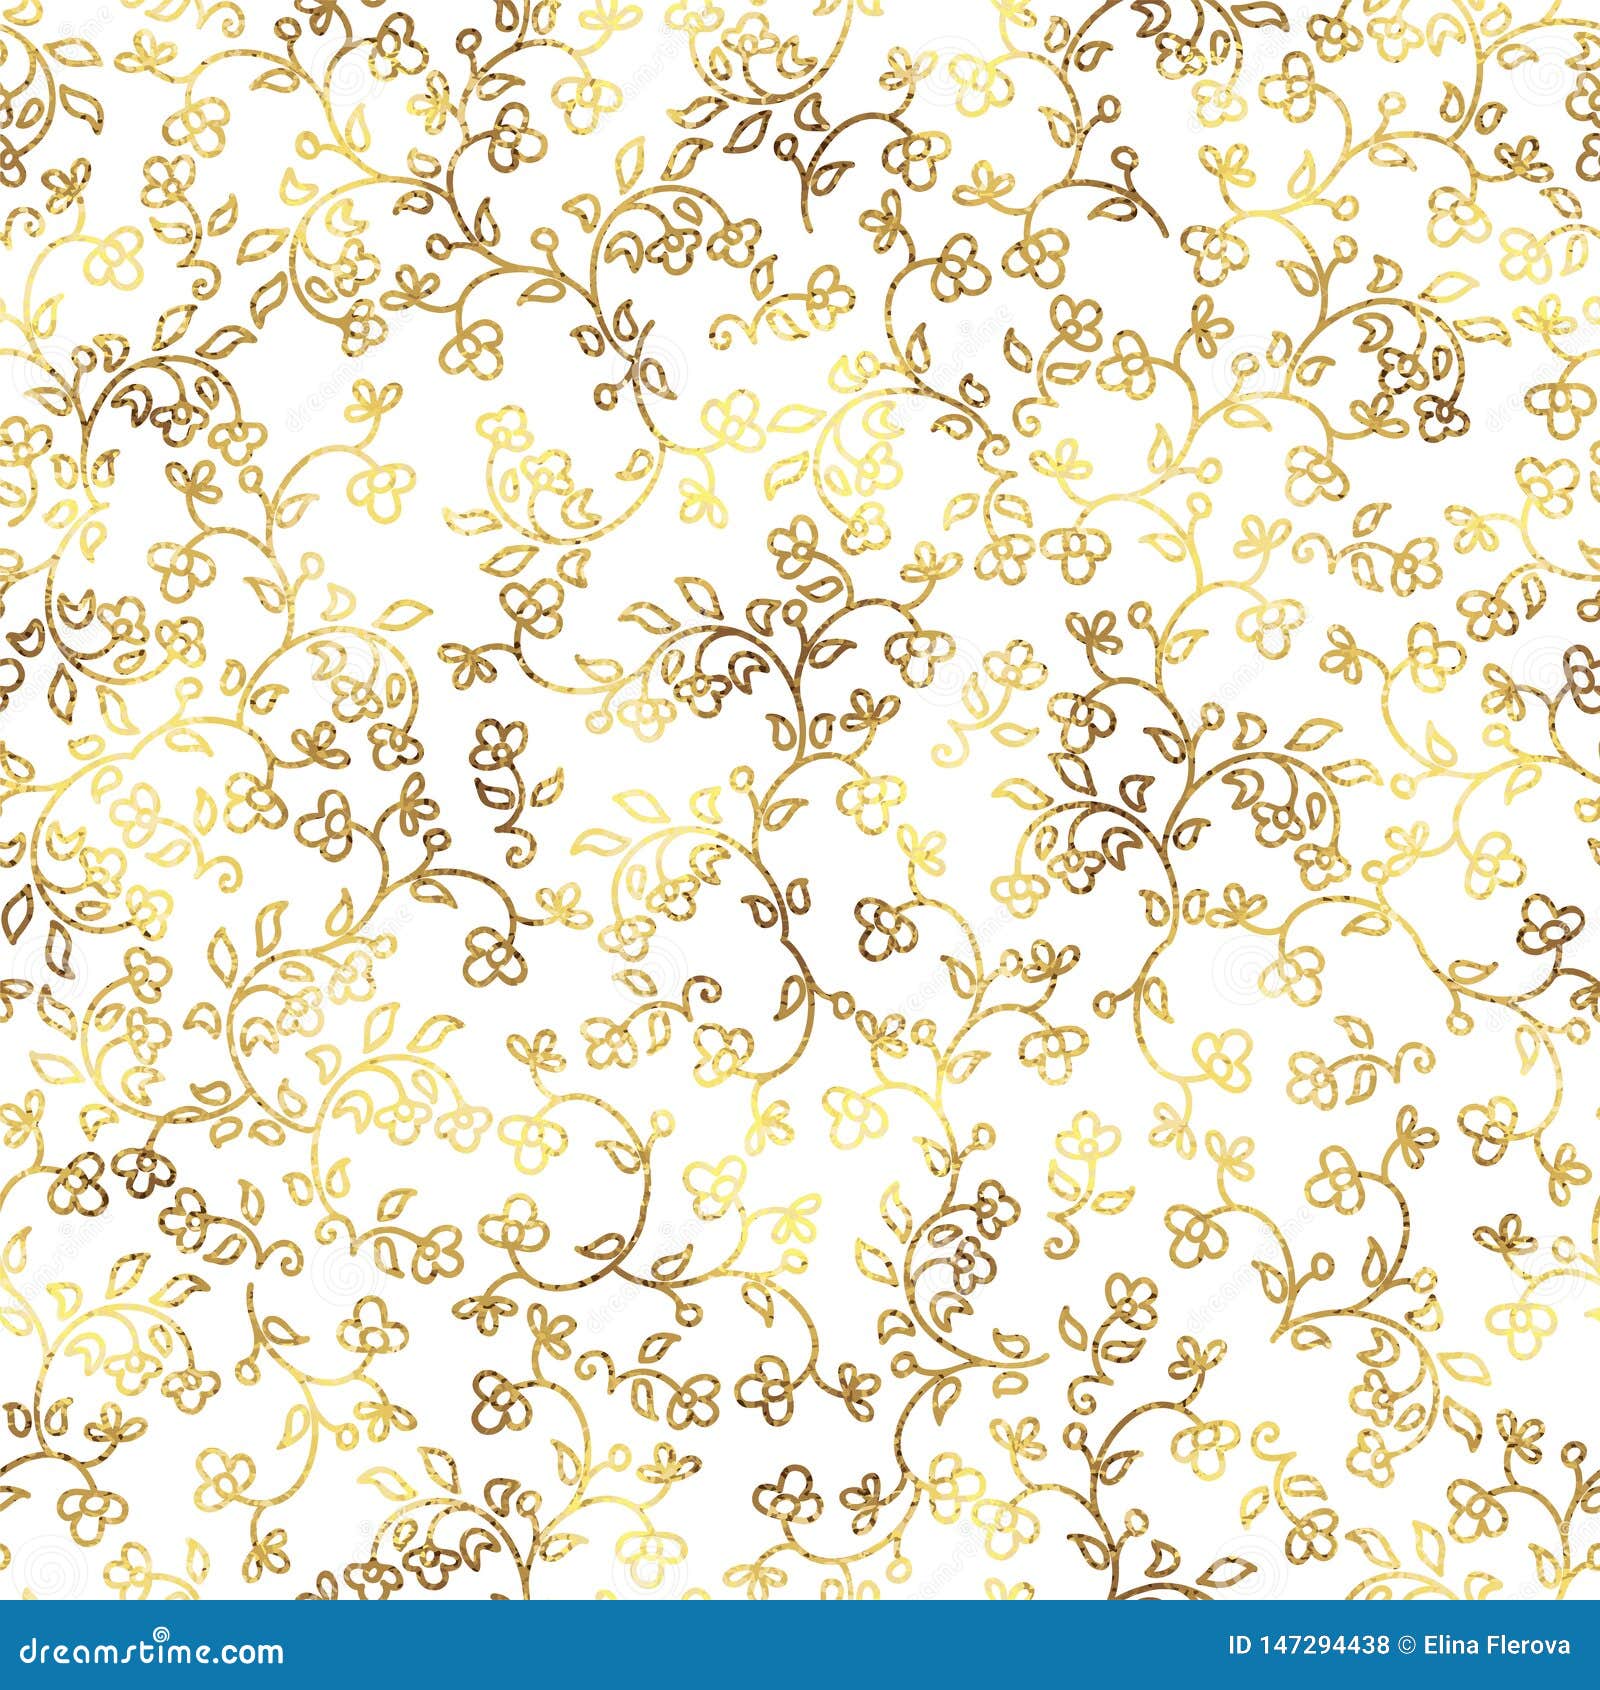 Hãy tưởng tượng trên nền trắng, hàng loạt hoa vàng liền nhau tạo thành một bức tranh đẹp mắt. Đây là những hình ảnh hoa vàng trên nền trắng liên tục mà bạn đang tìm kiếm. Hãy click vào ảnh để cảm nhận nhé!